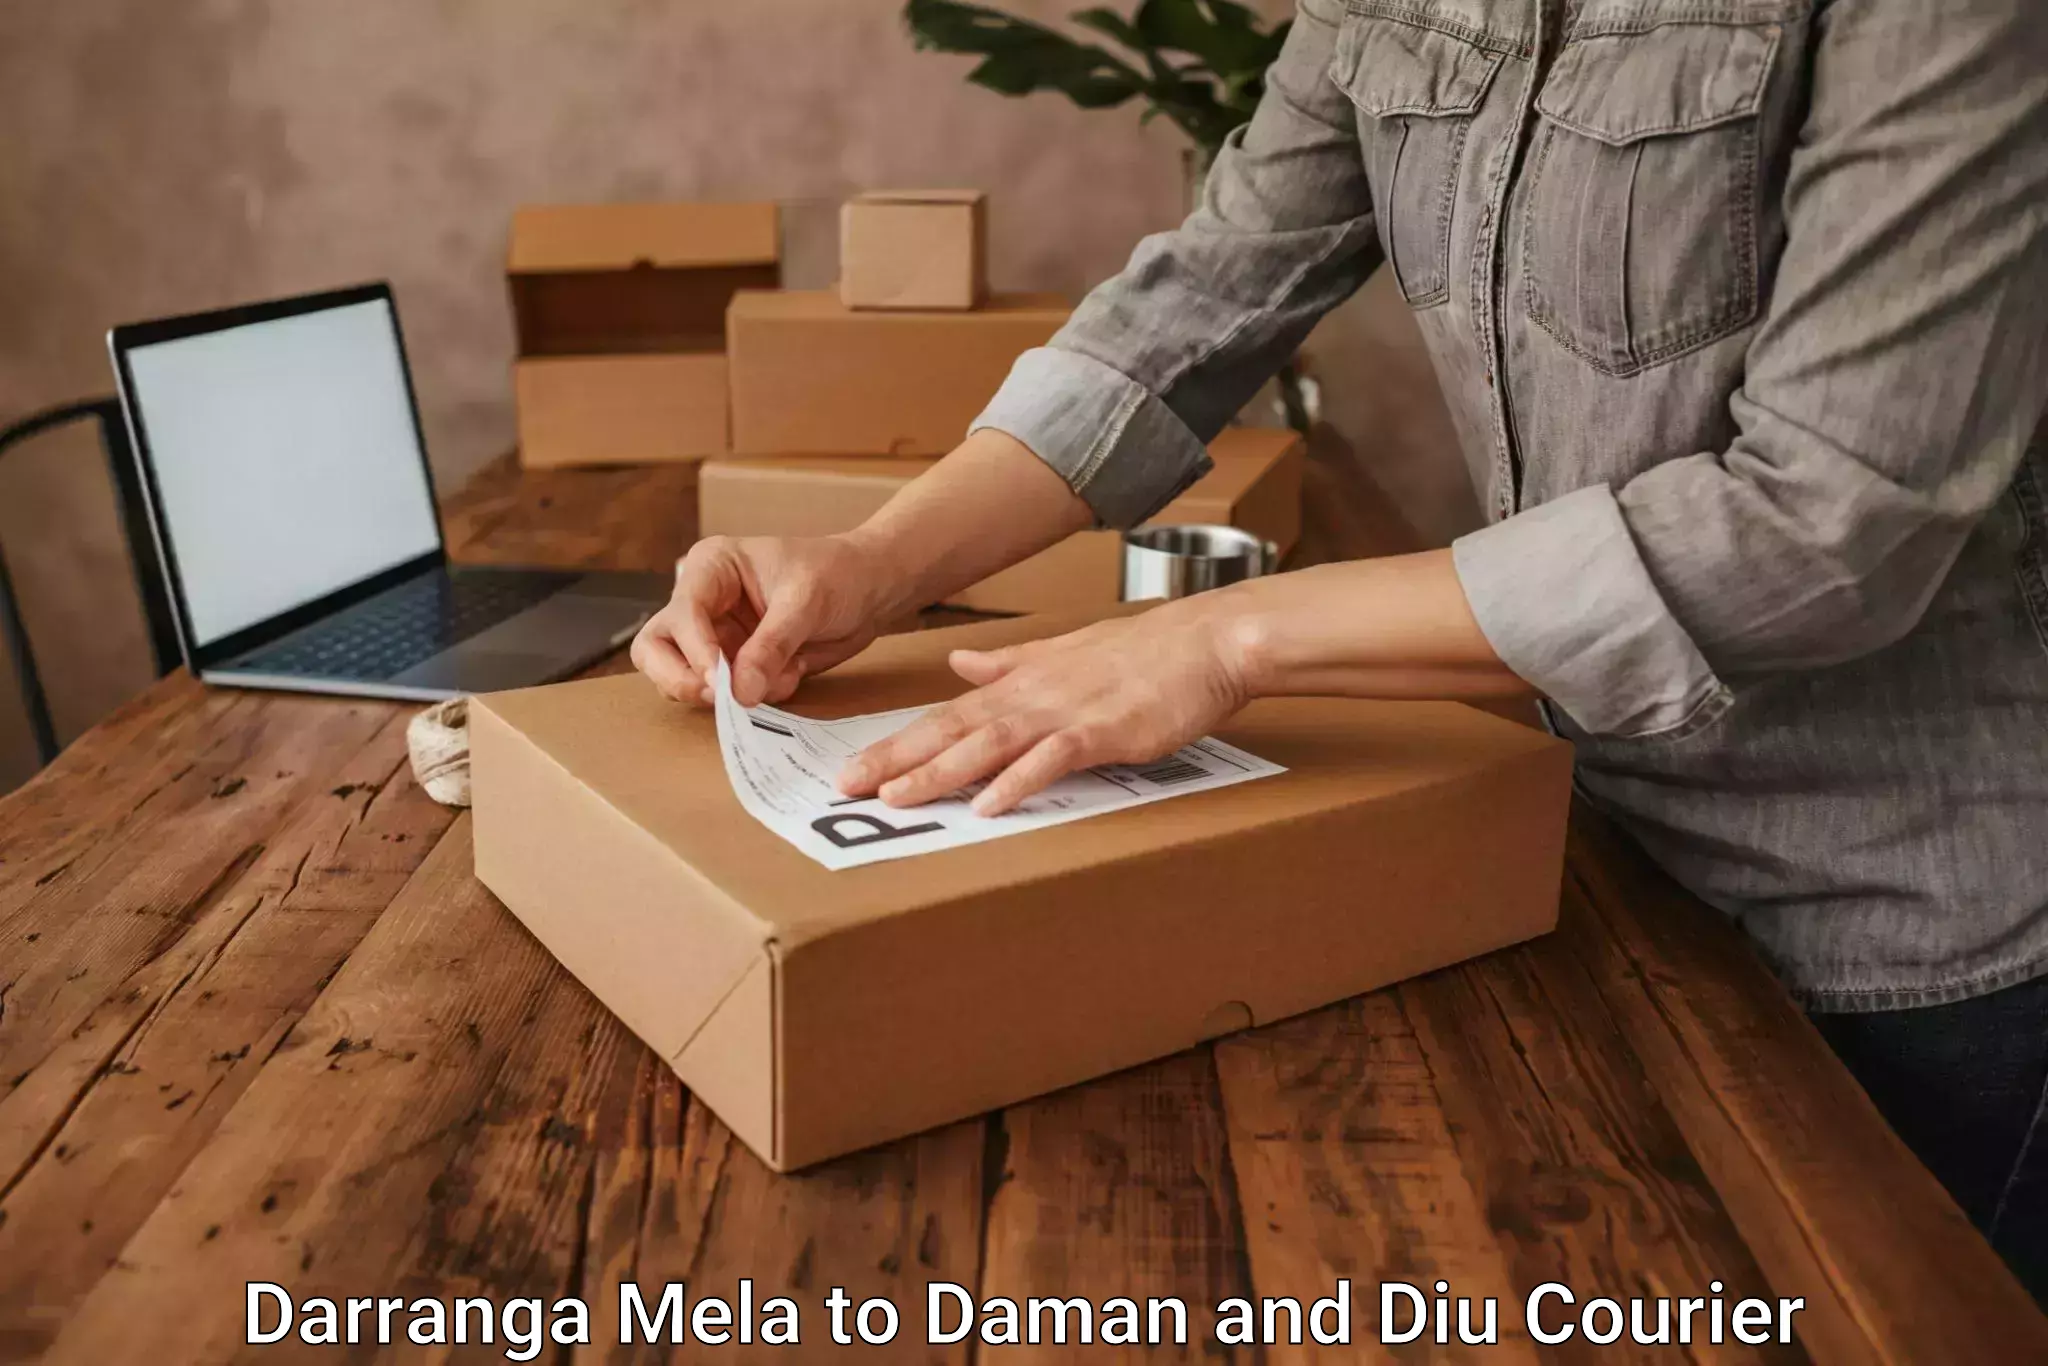 24/7 courier service Darranga Mela to Diu